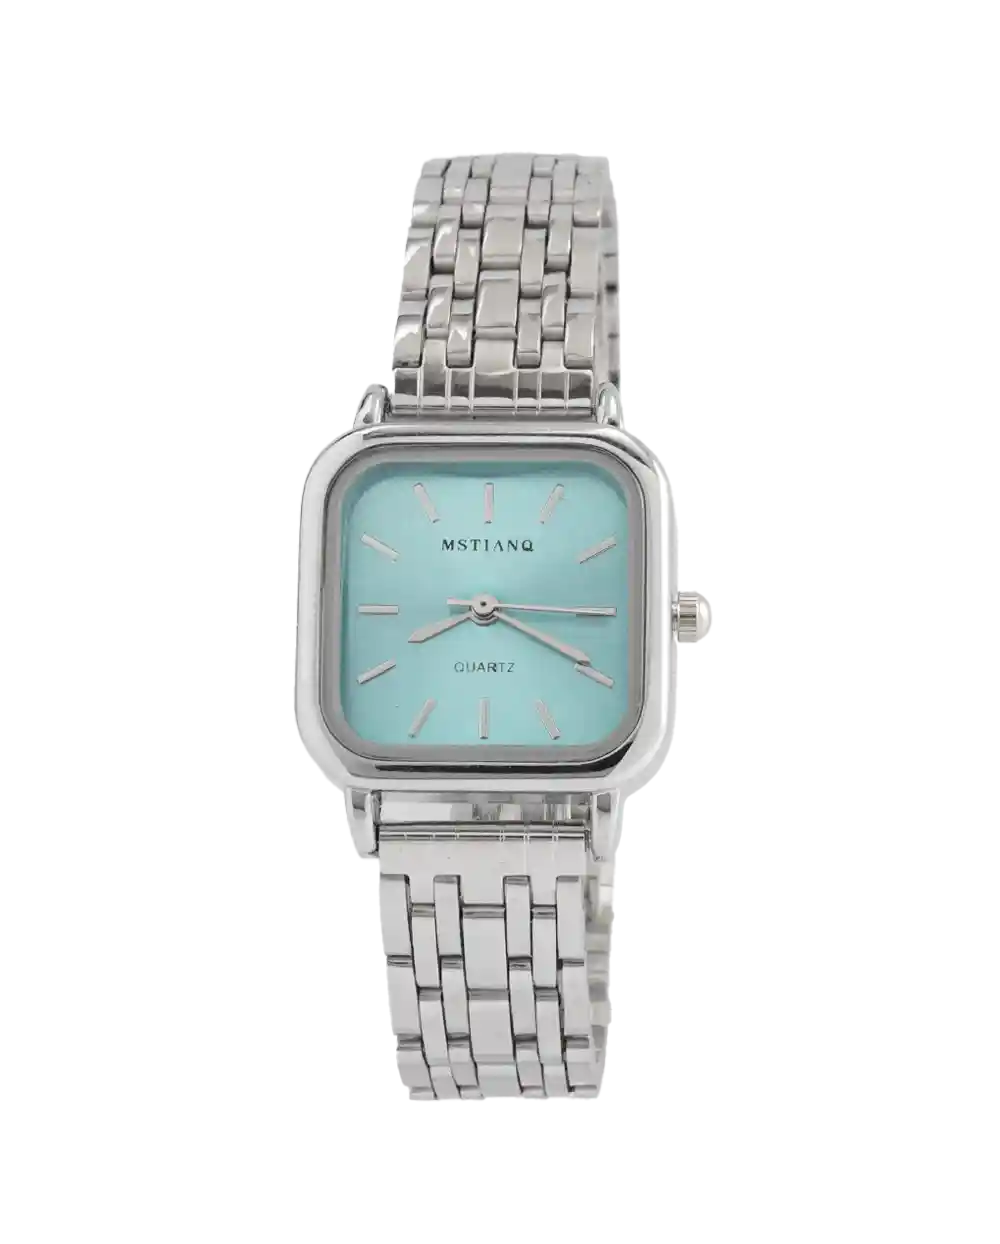 خرید ساعت مچی زنانه MSTIANQ مدل 1808 صفحه آبی قیمت 470 هزارتومان به همراه ارسال رایگان و جعبه ی ساعت | ساعت دخترانه ی صفحه آبی استیل